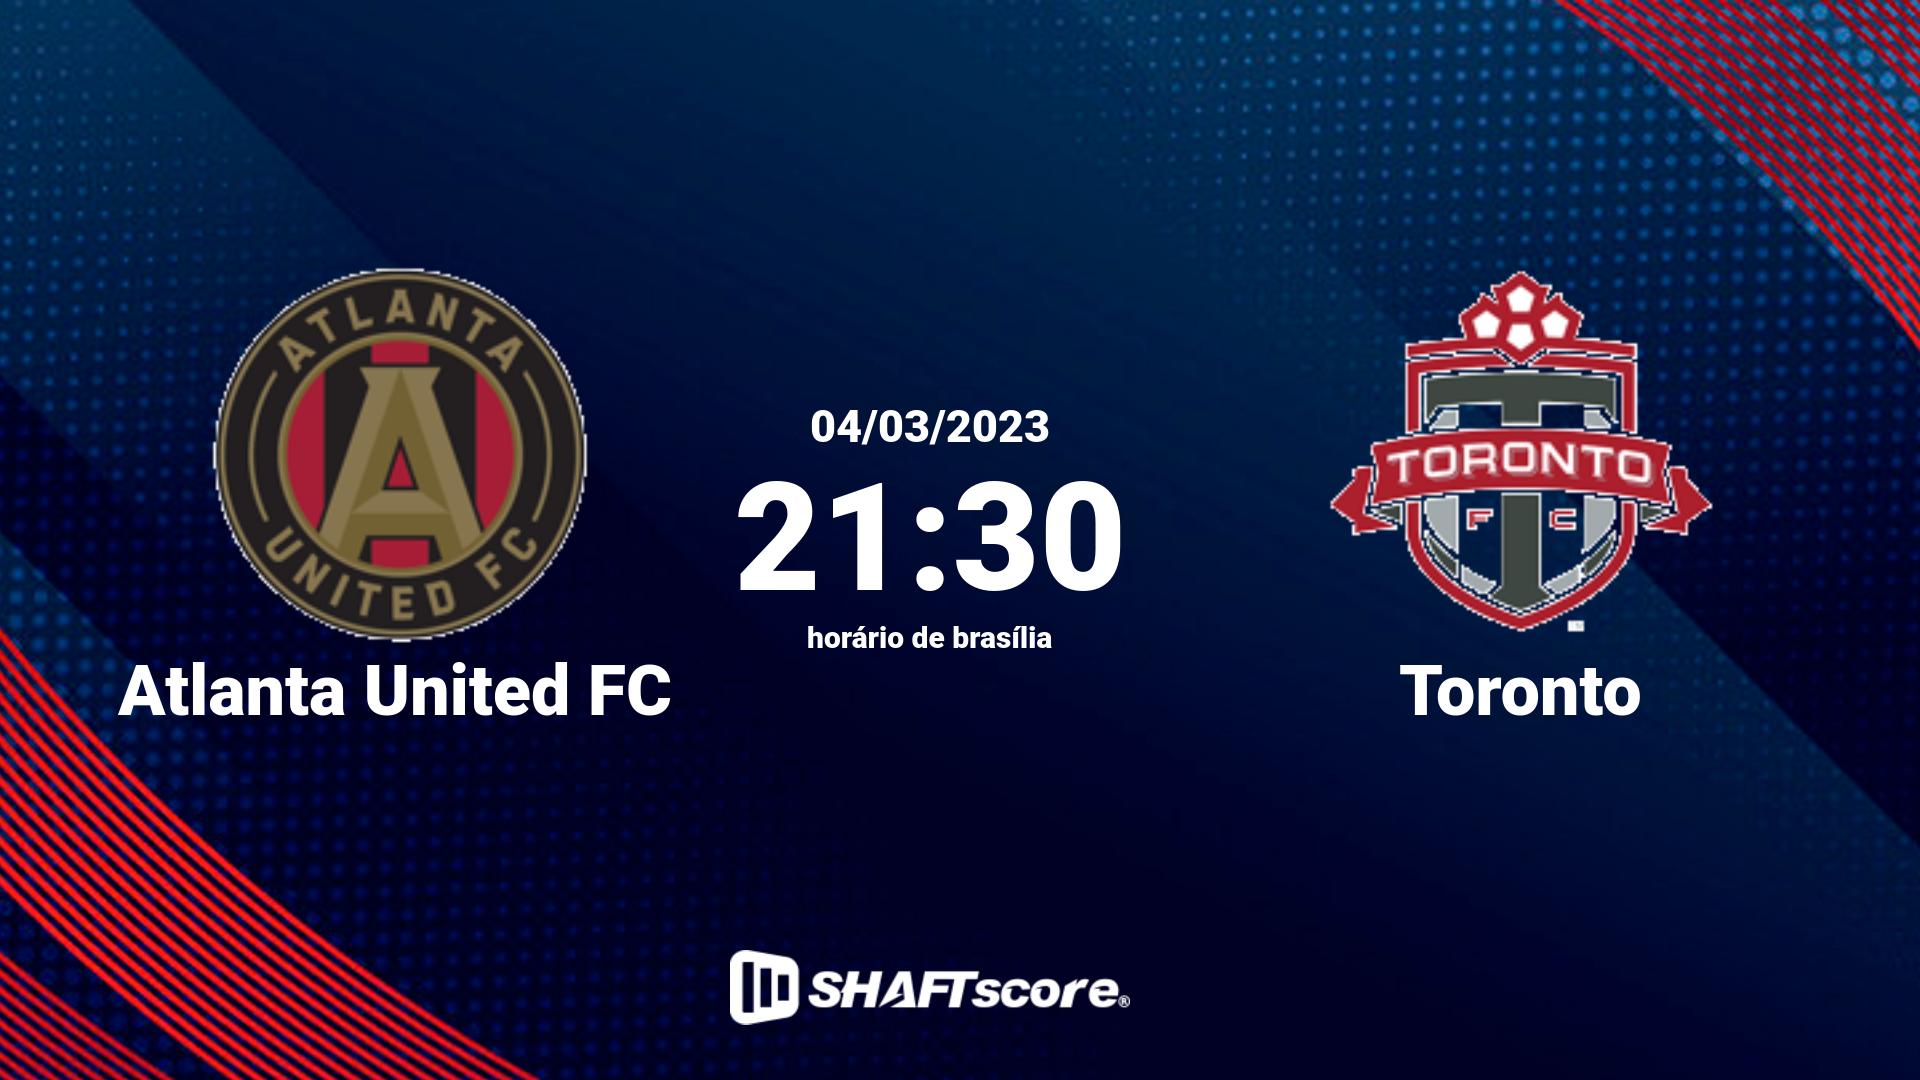 Estatísticas do jogo Atlanta United FC vs Toronto 04.03 21:30